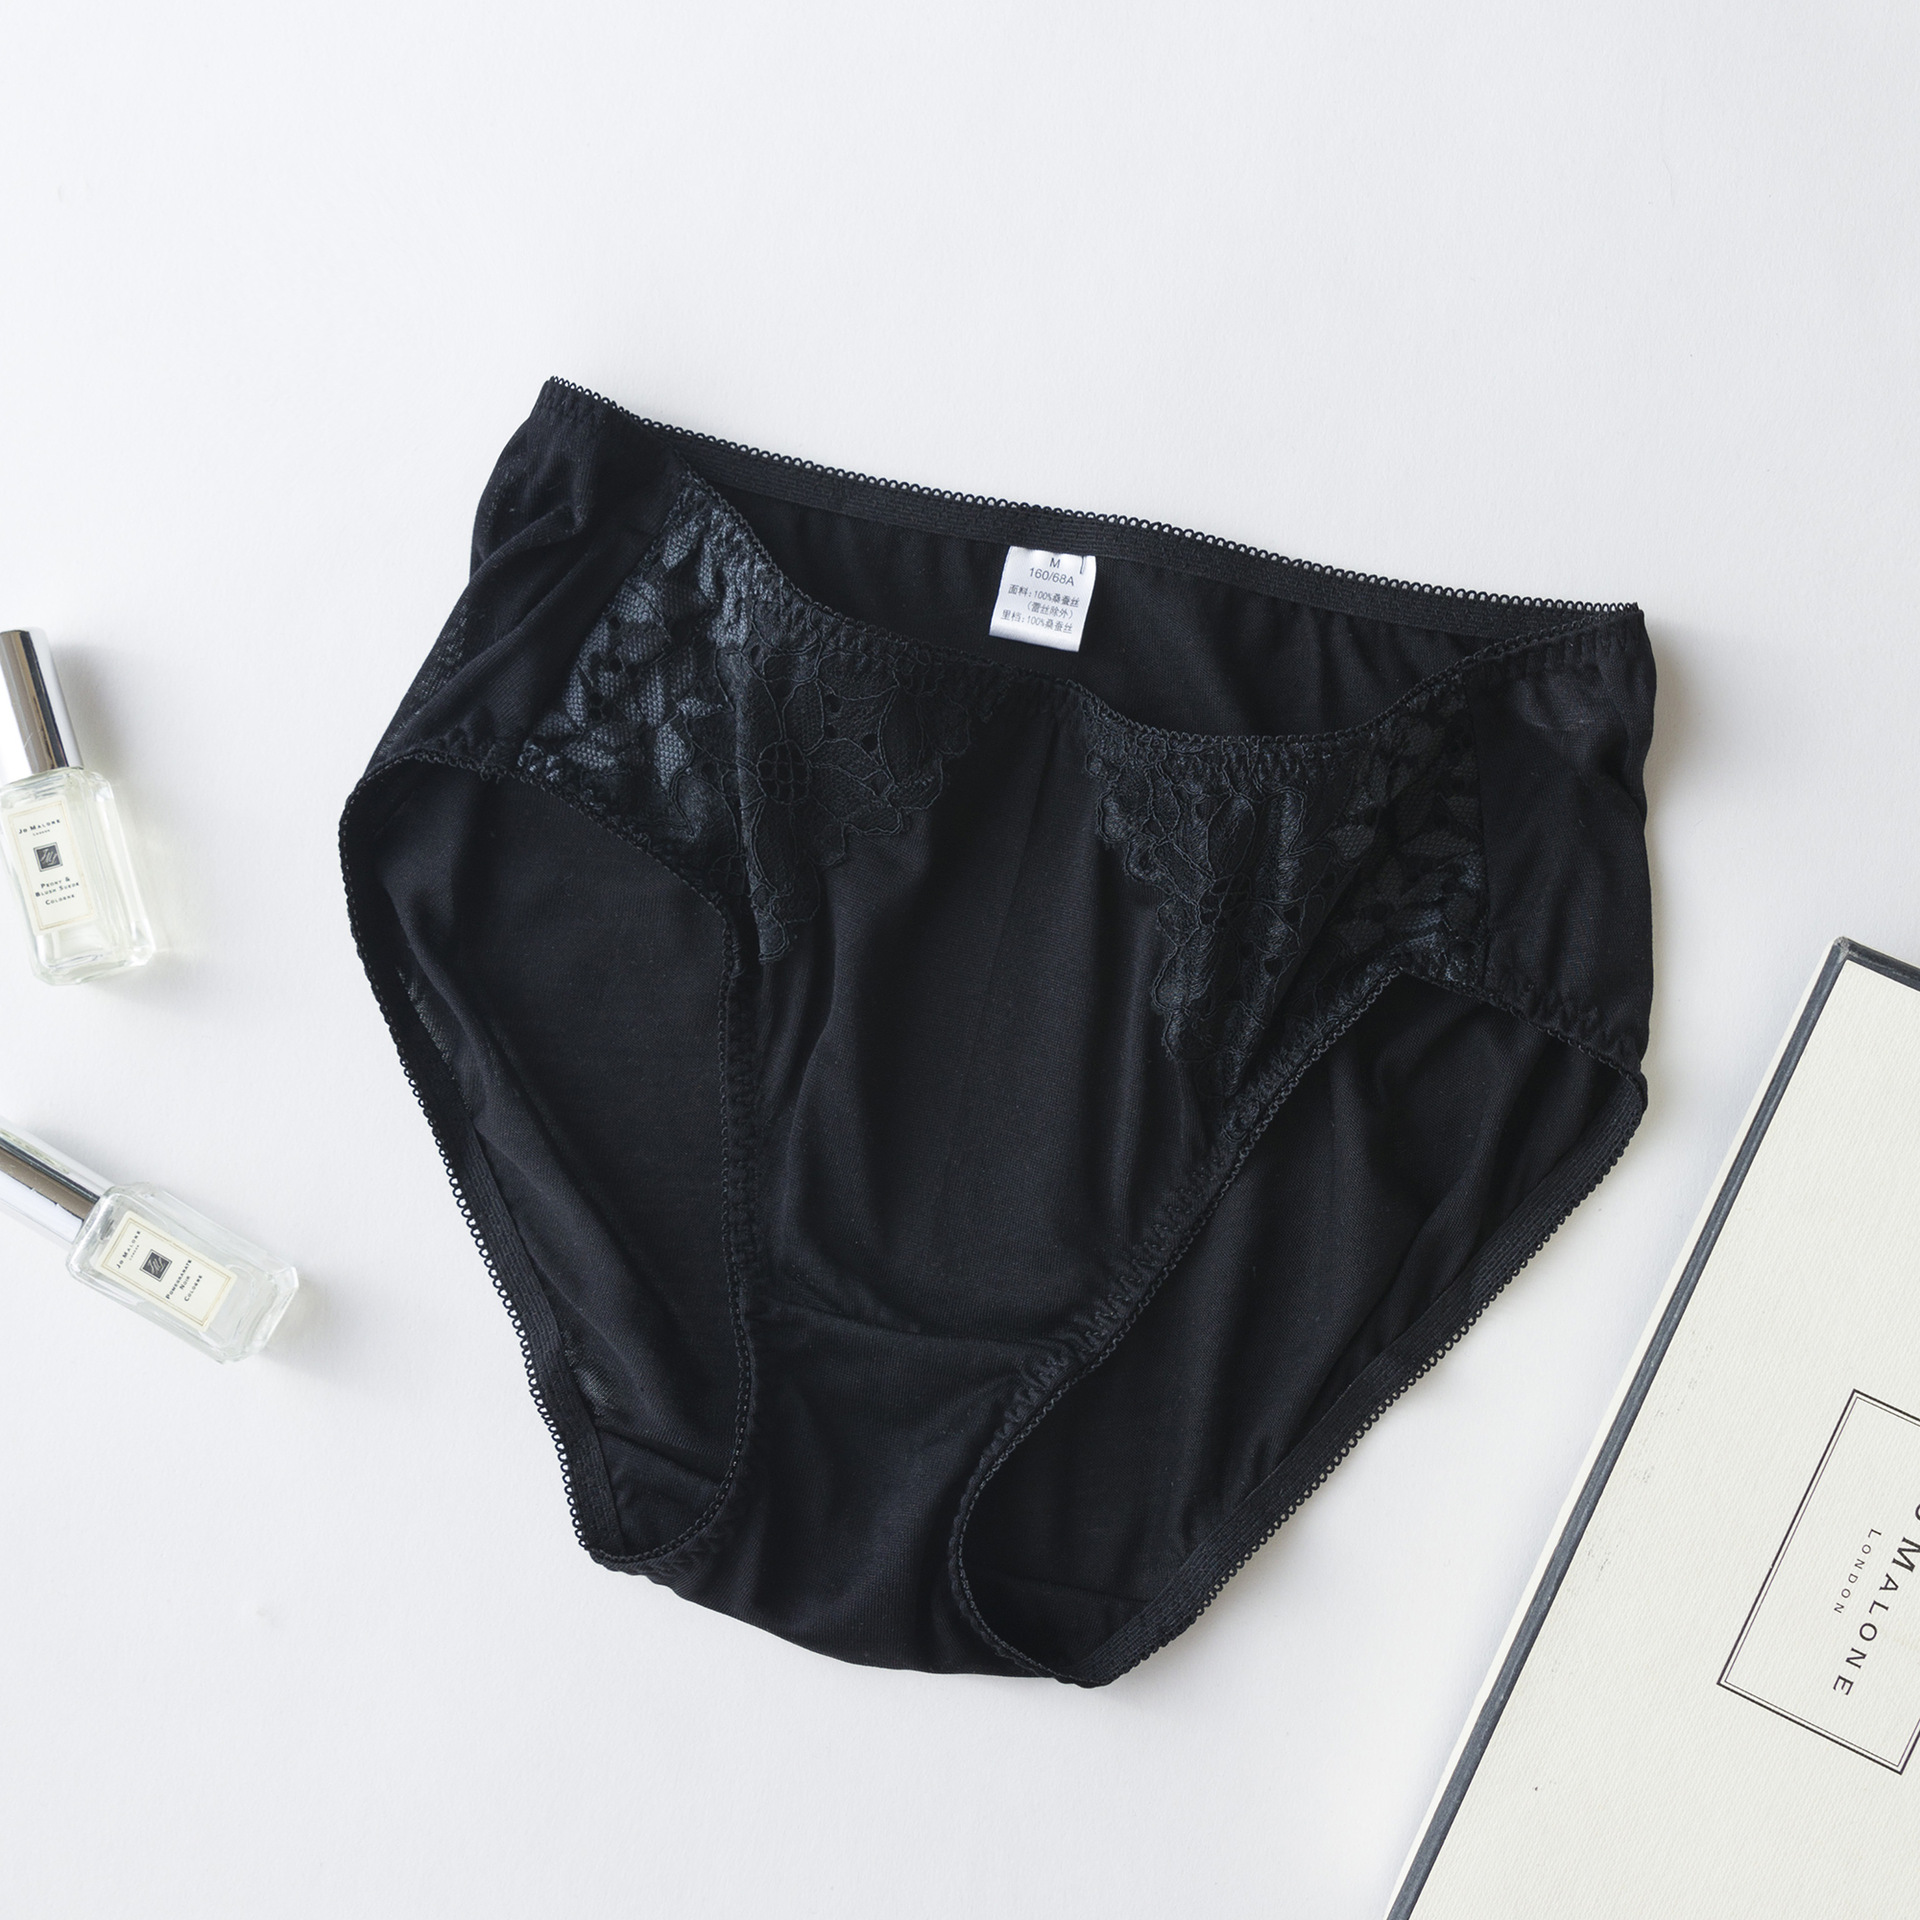 Großhandel Sexy Spitze Schwarze Seide Unterhose Unterwäsche Höschen für Frauen